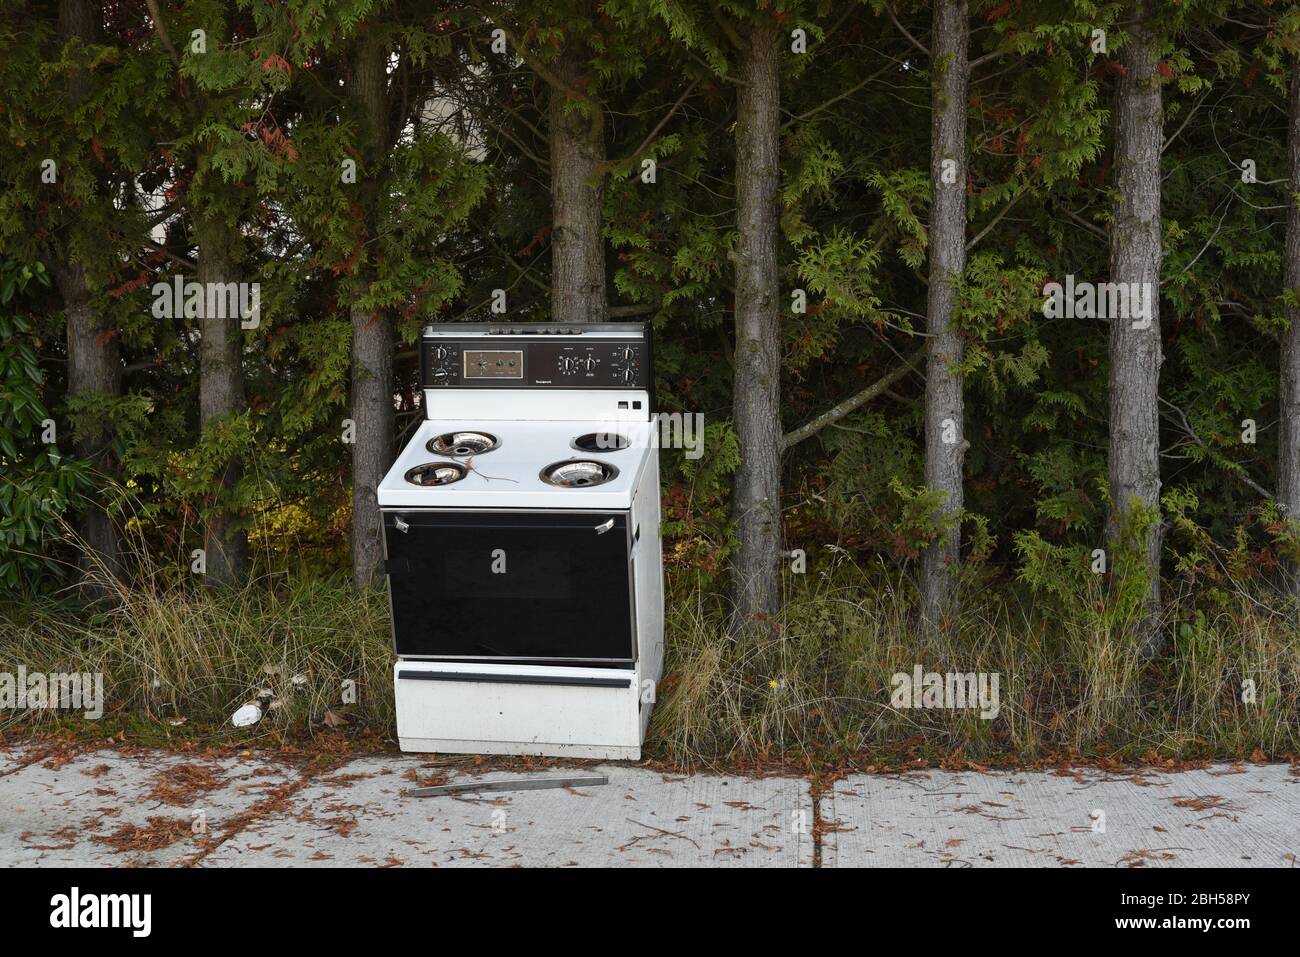 Una estufa y horno viejos abandonados se abandona en una acera frente a una hilera de árboles en Victoria, British Columbia, Canadá Foto de stock